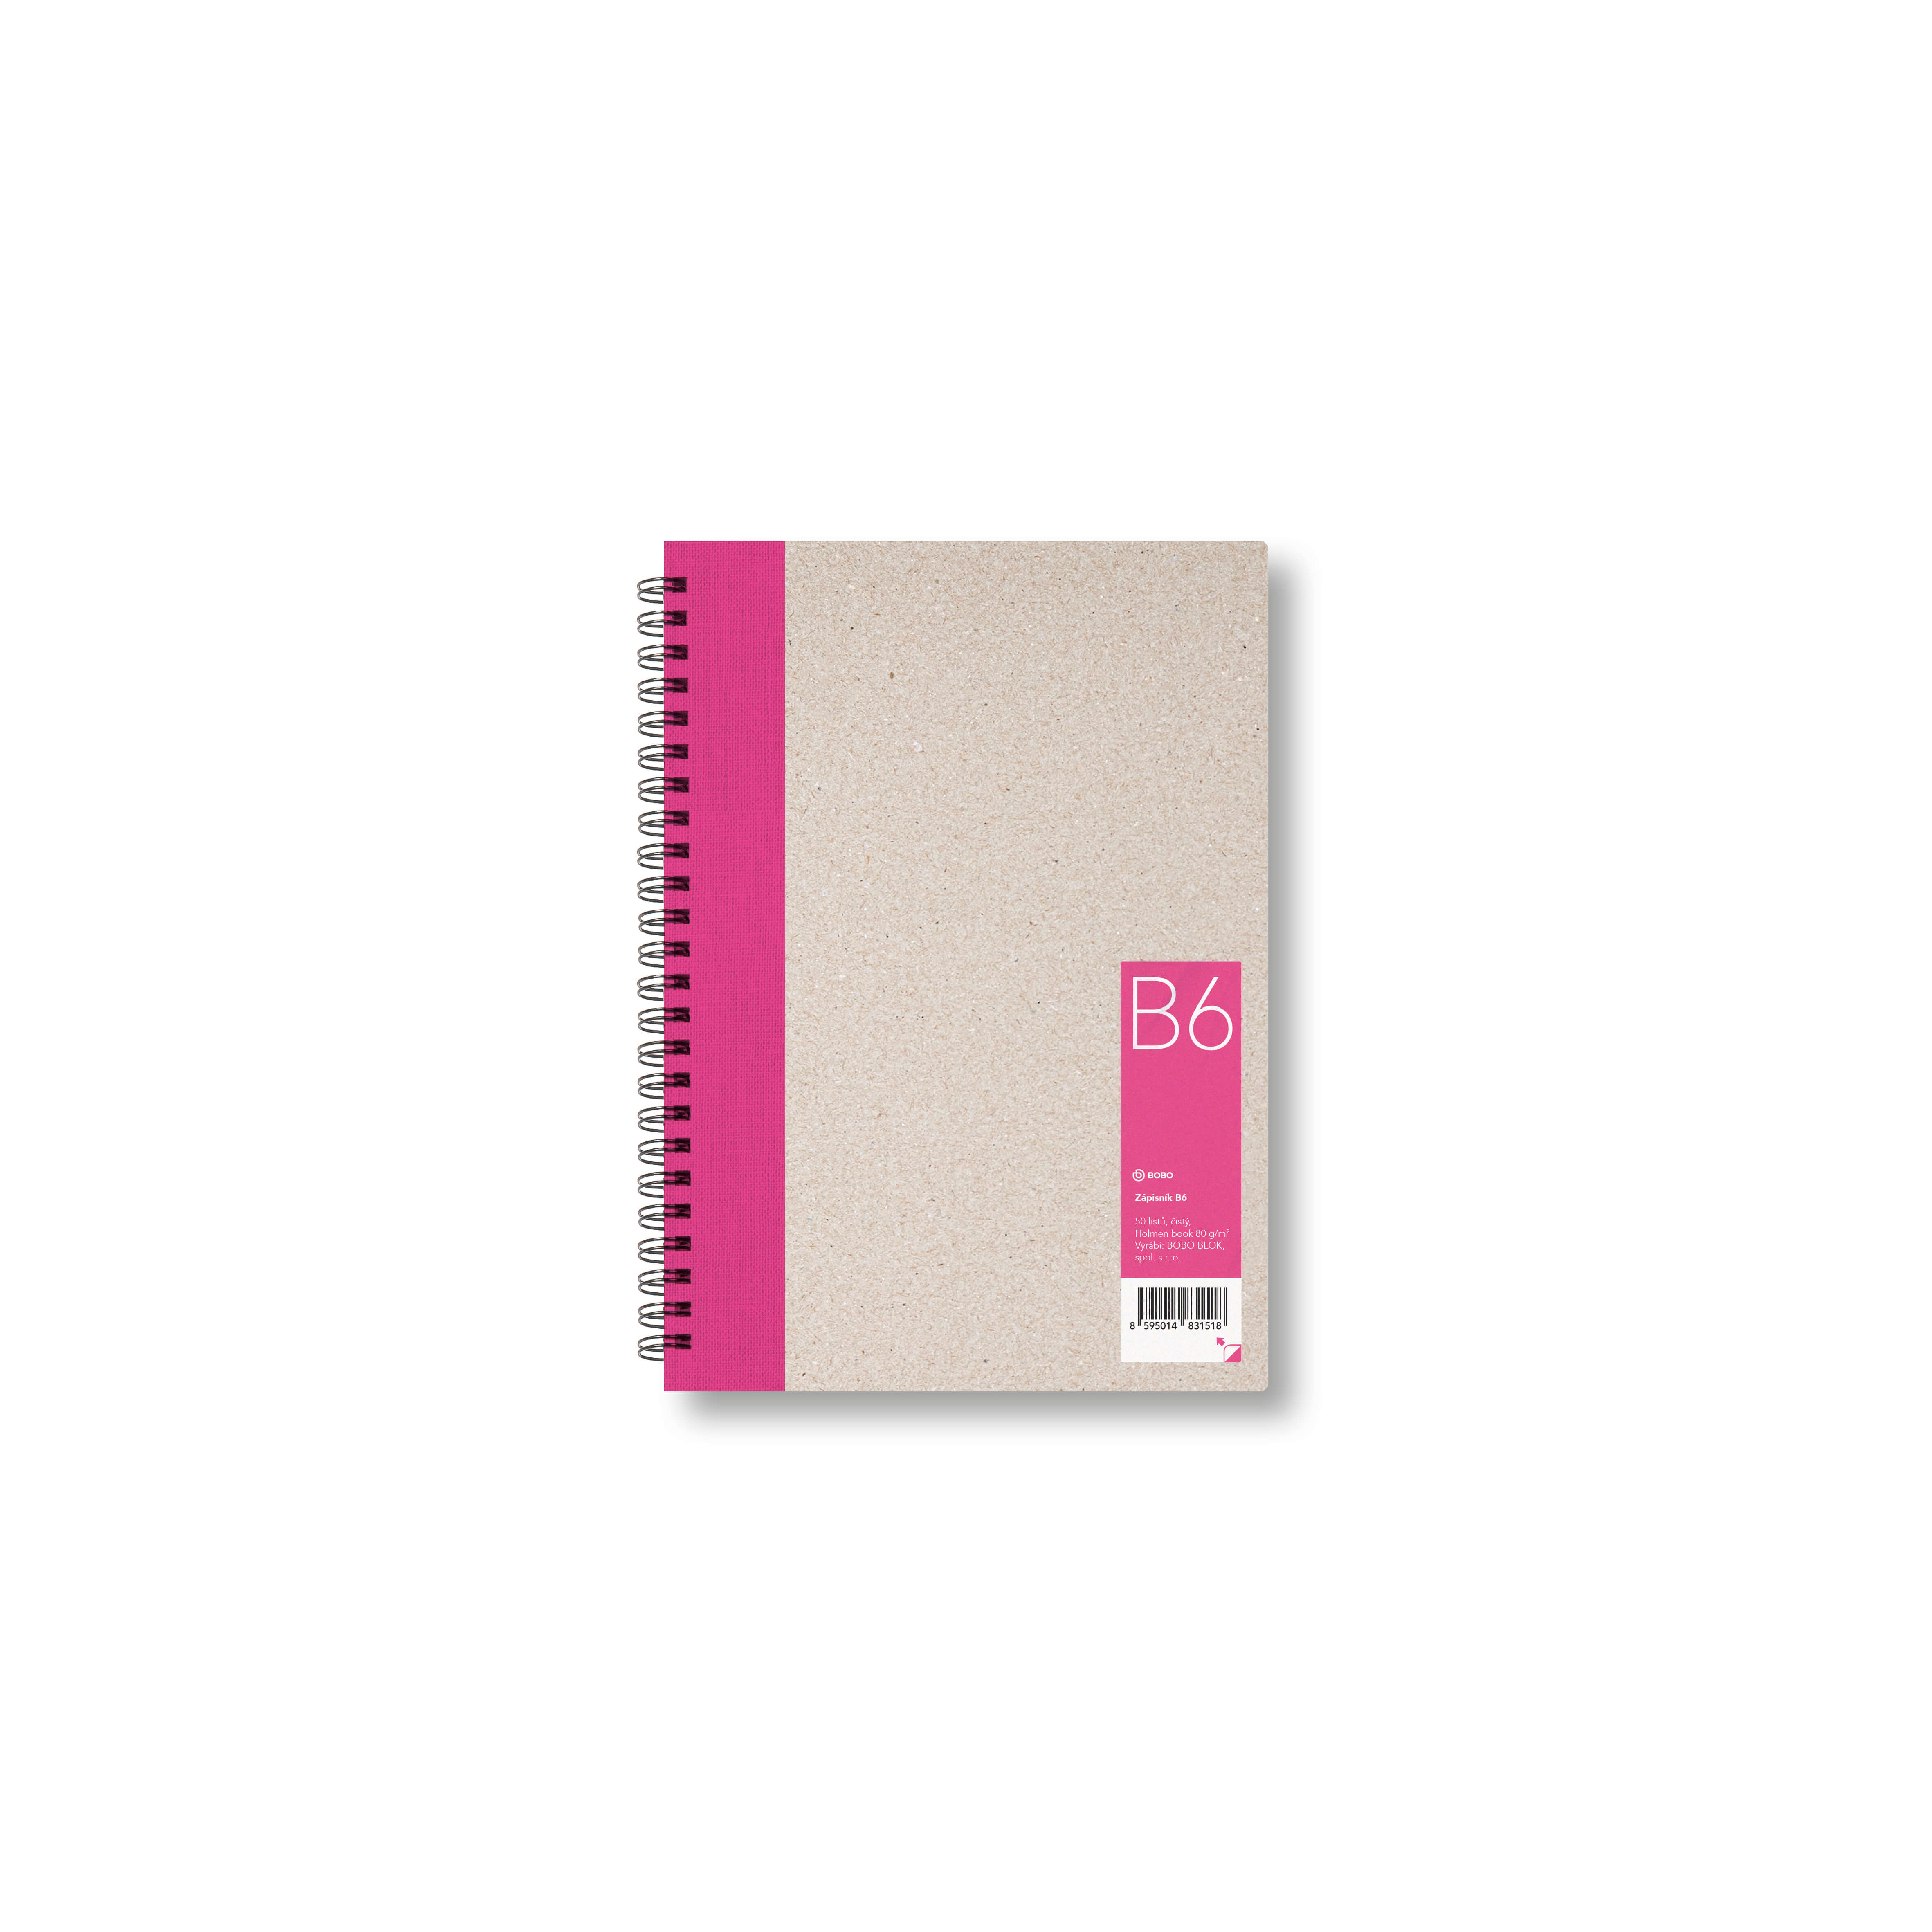 Zápisník Bobo B6, čistý, růžový